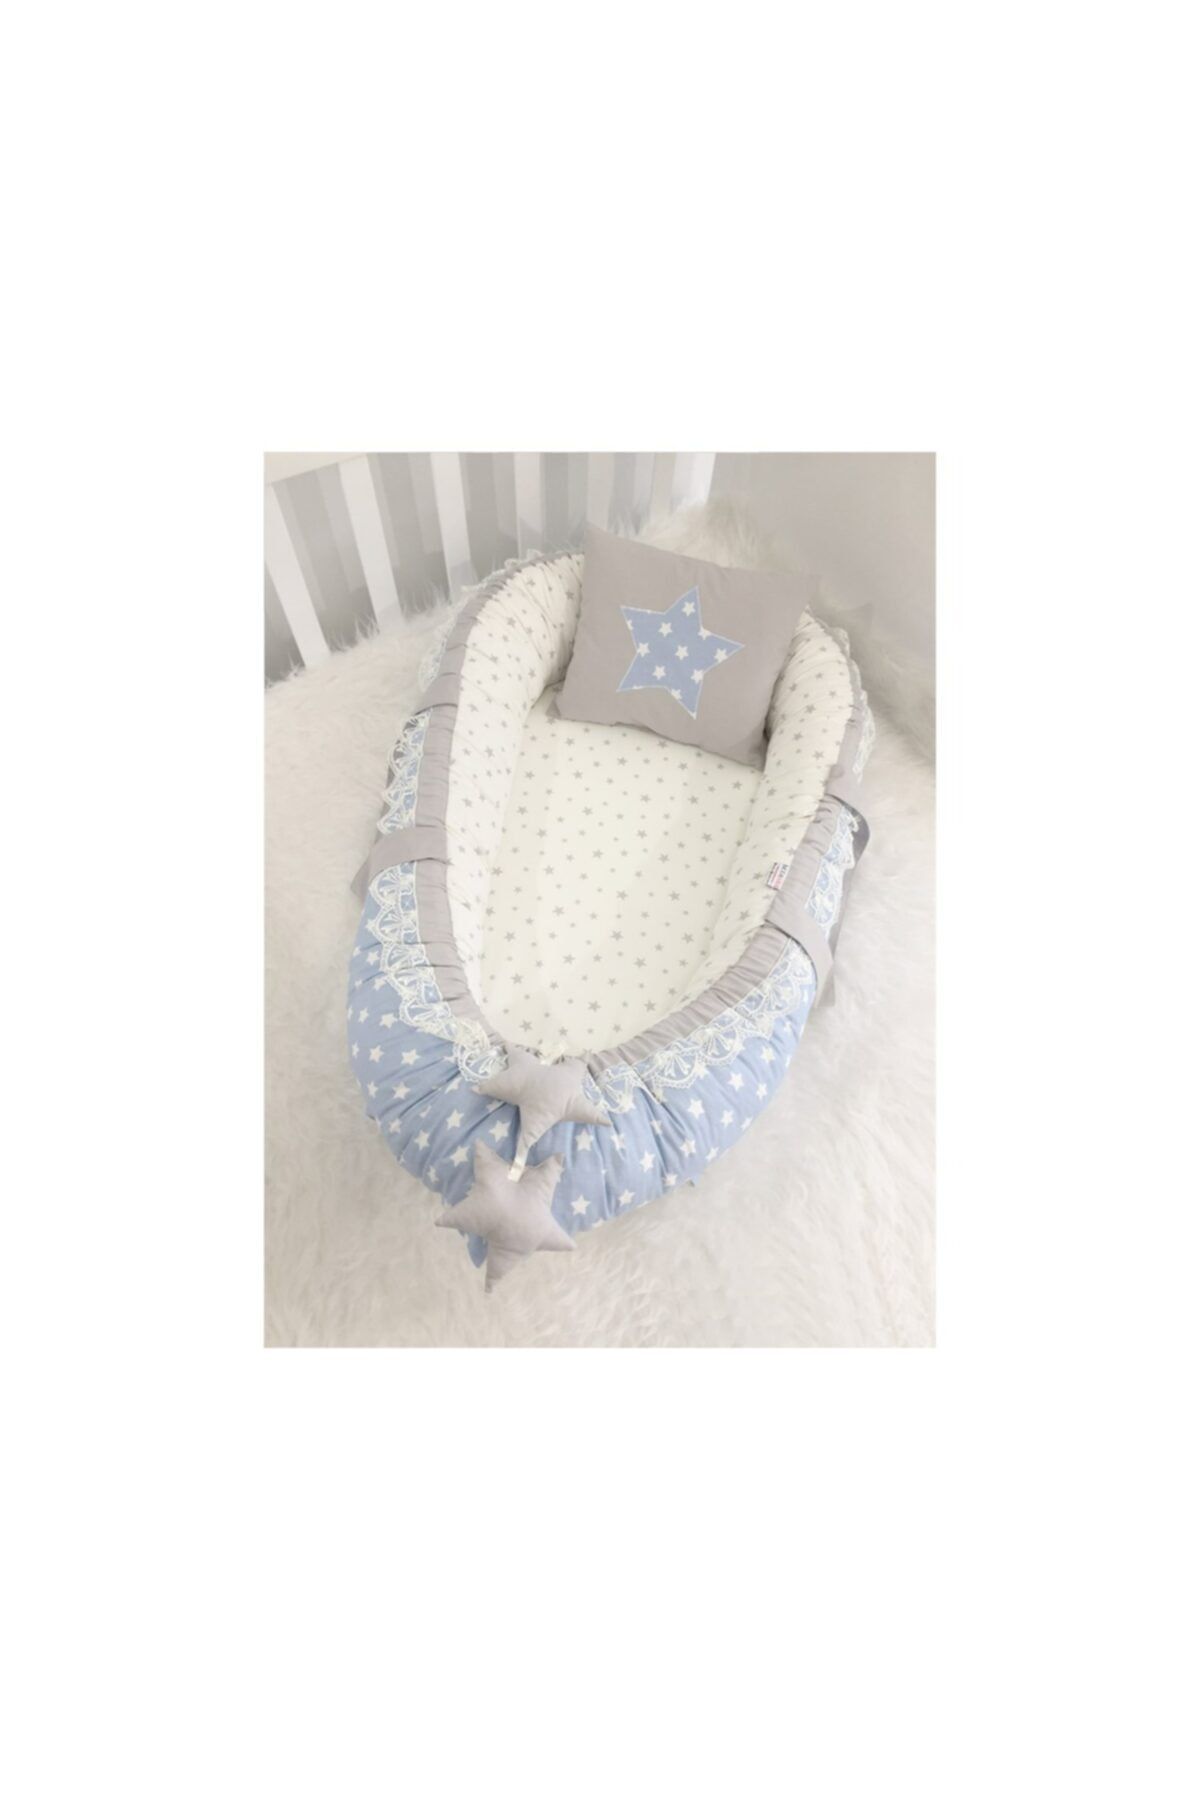 Jaju Baby Nest Mavi Yıldızlı Gri Lüx Jaju-babynest Anne Yanı Bebek Yatağı